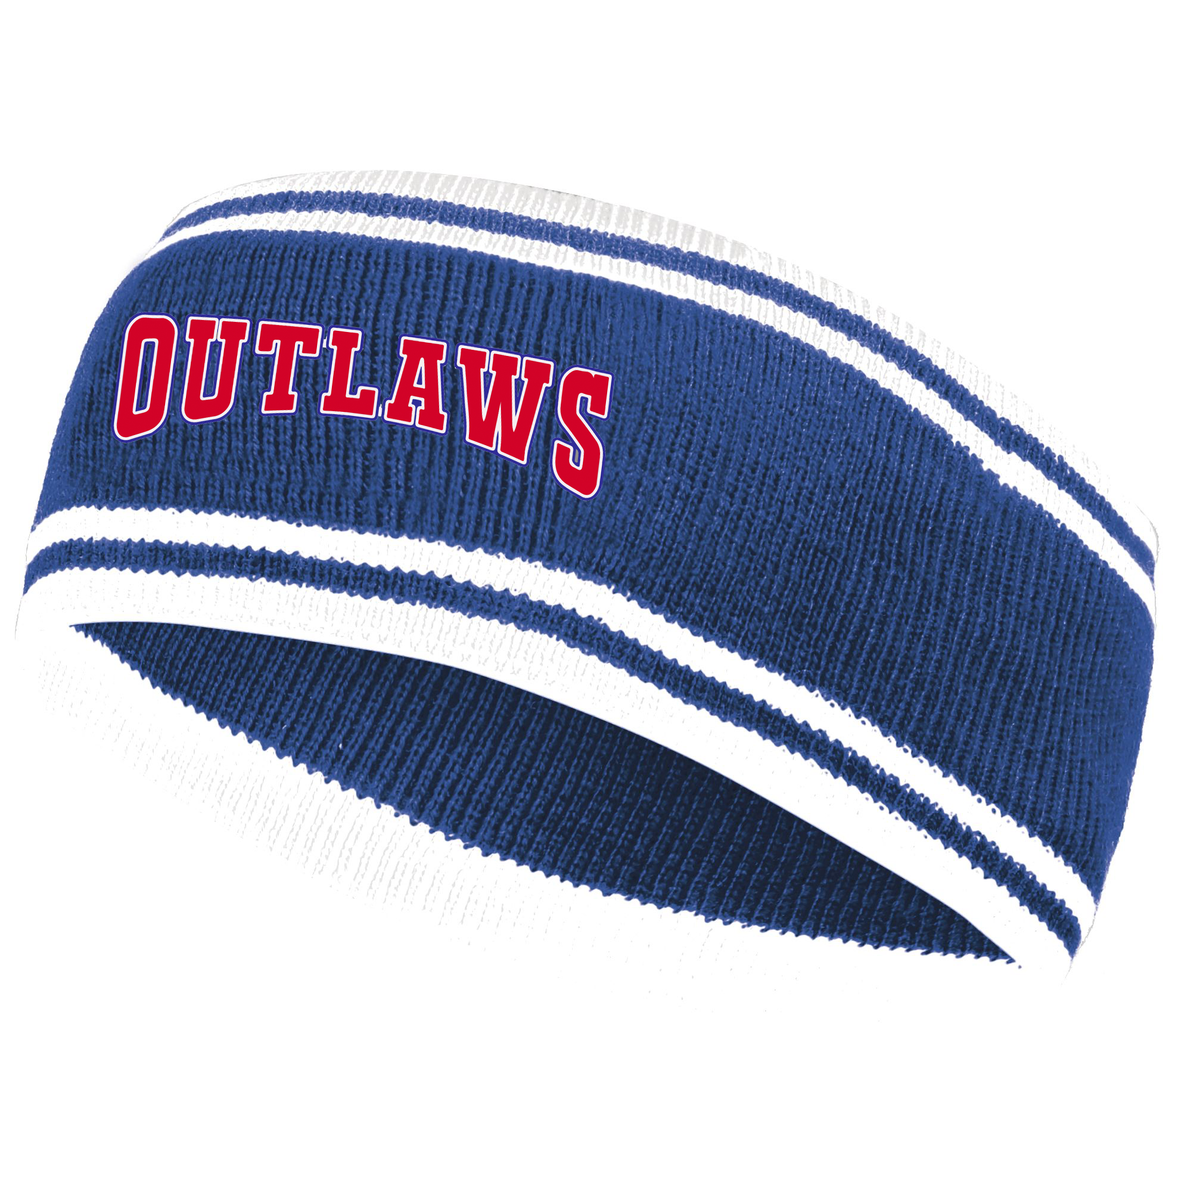 Southern Indiana Outlaws Baseball Homecoming Knit Headband